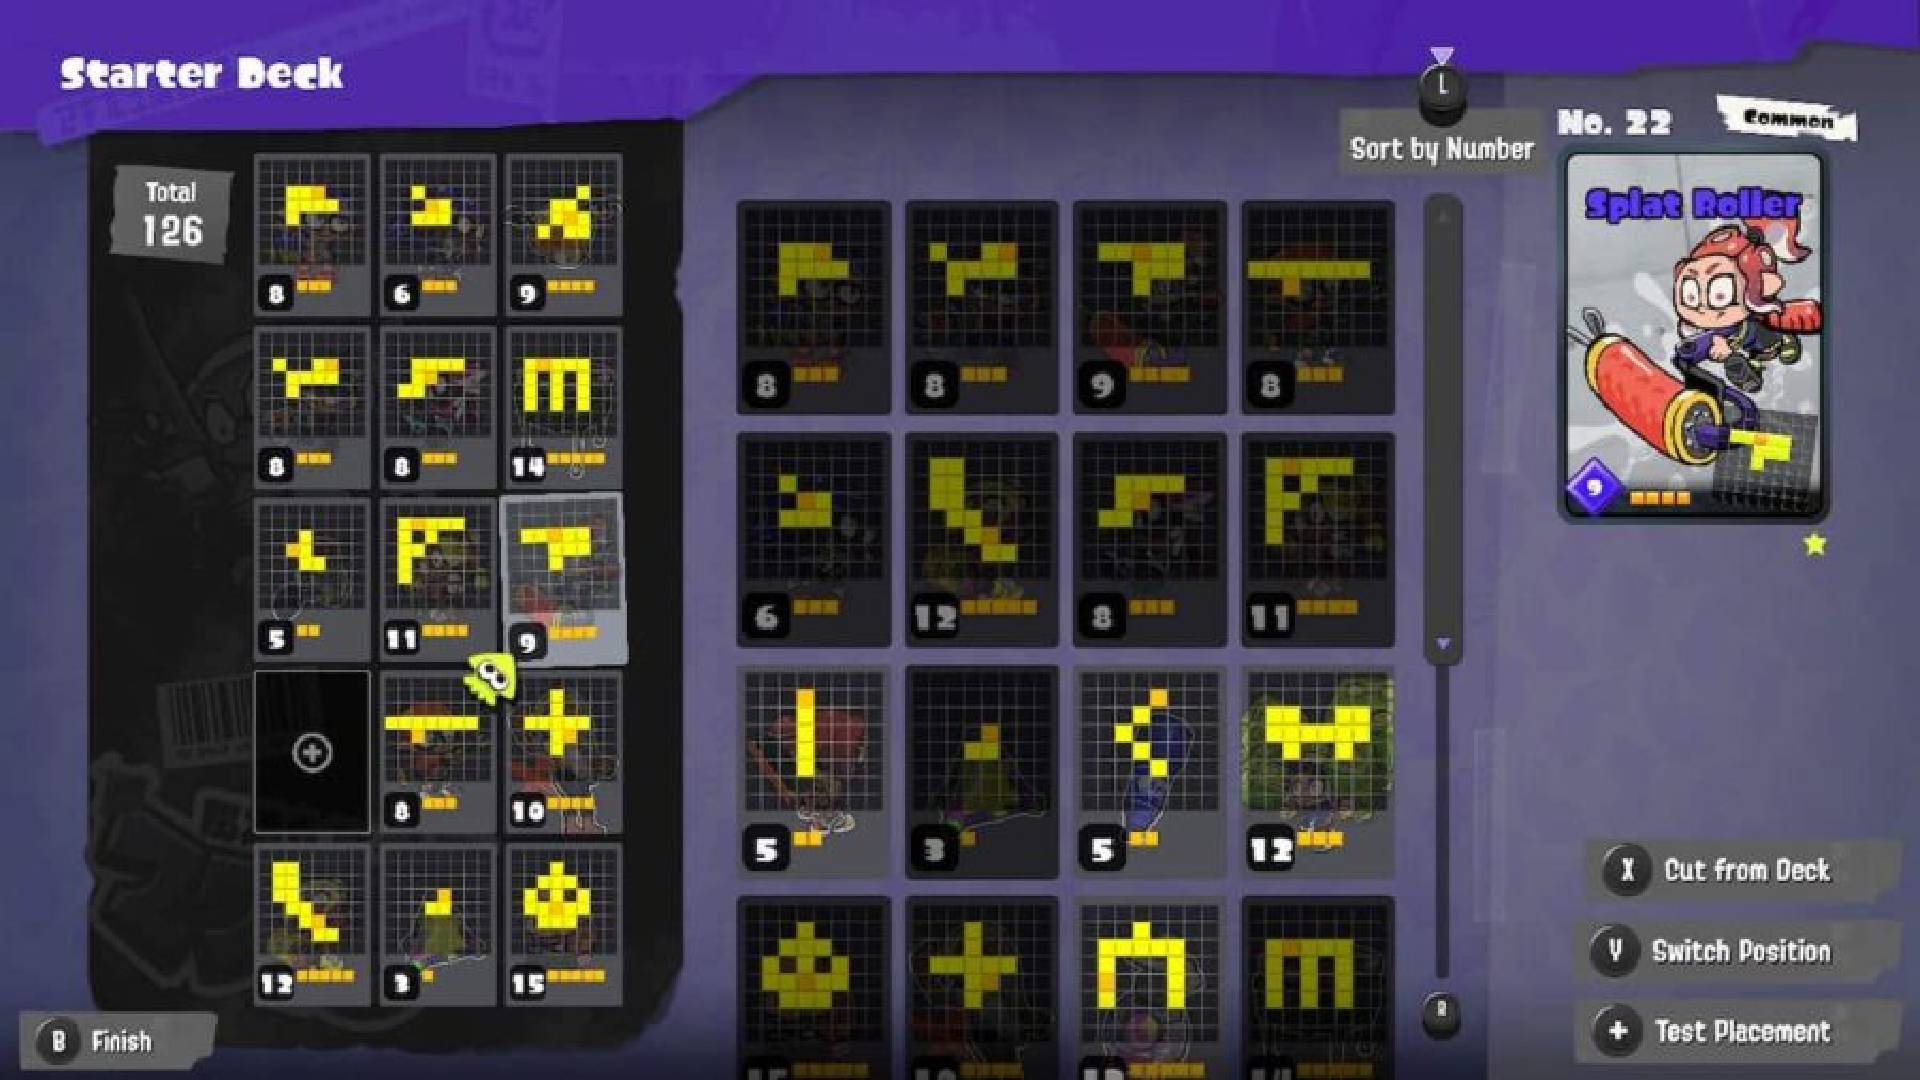 Splatoon 3 tableturf battle: zrzut ekranu ze Splatoon 3 pokazuje ogromną różnorodność kart bitewnych tableturf